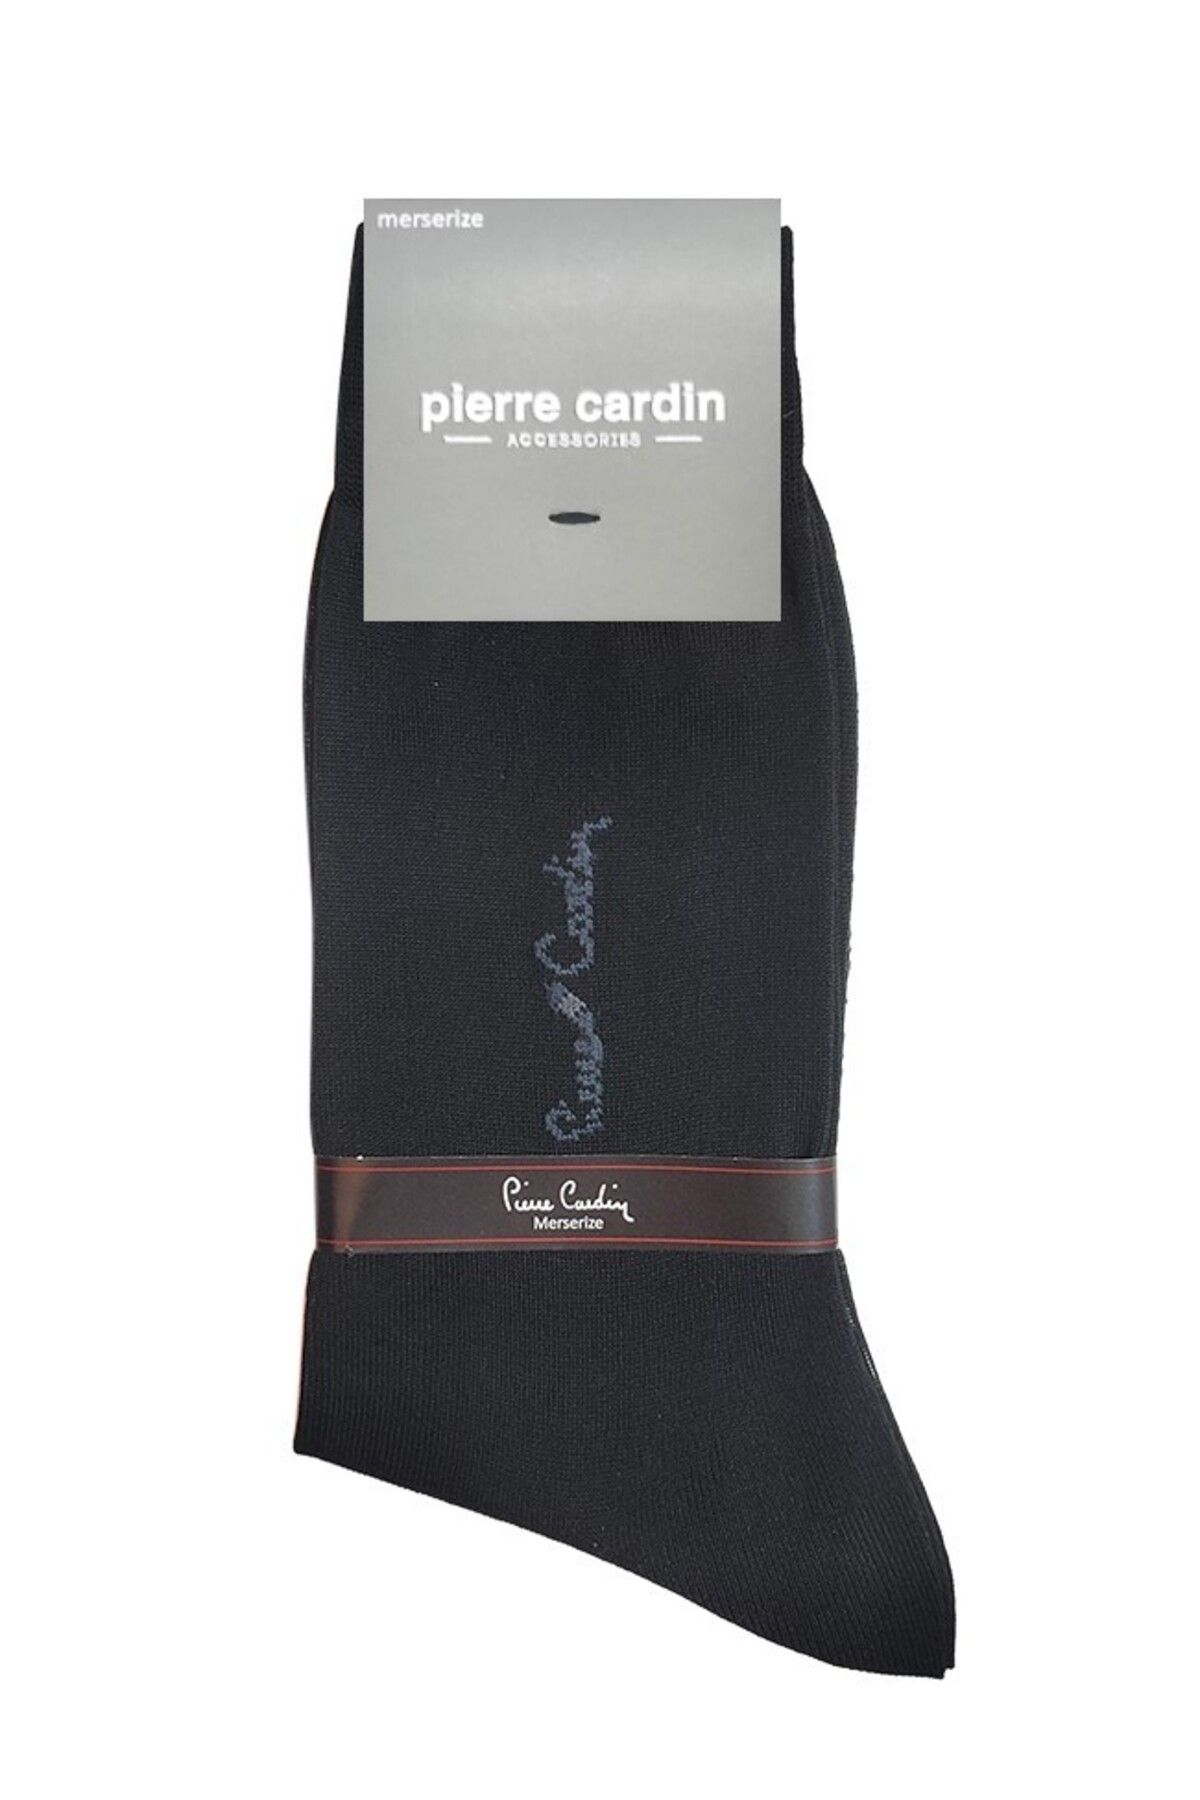 Pierre Cardin Akaa Erkek Merserize Çorap 152